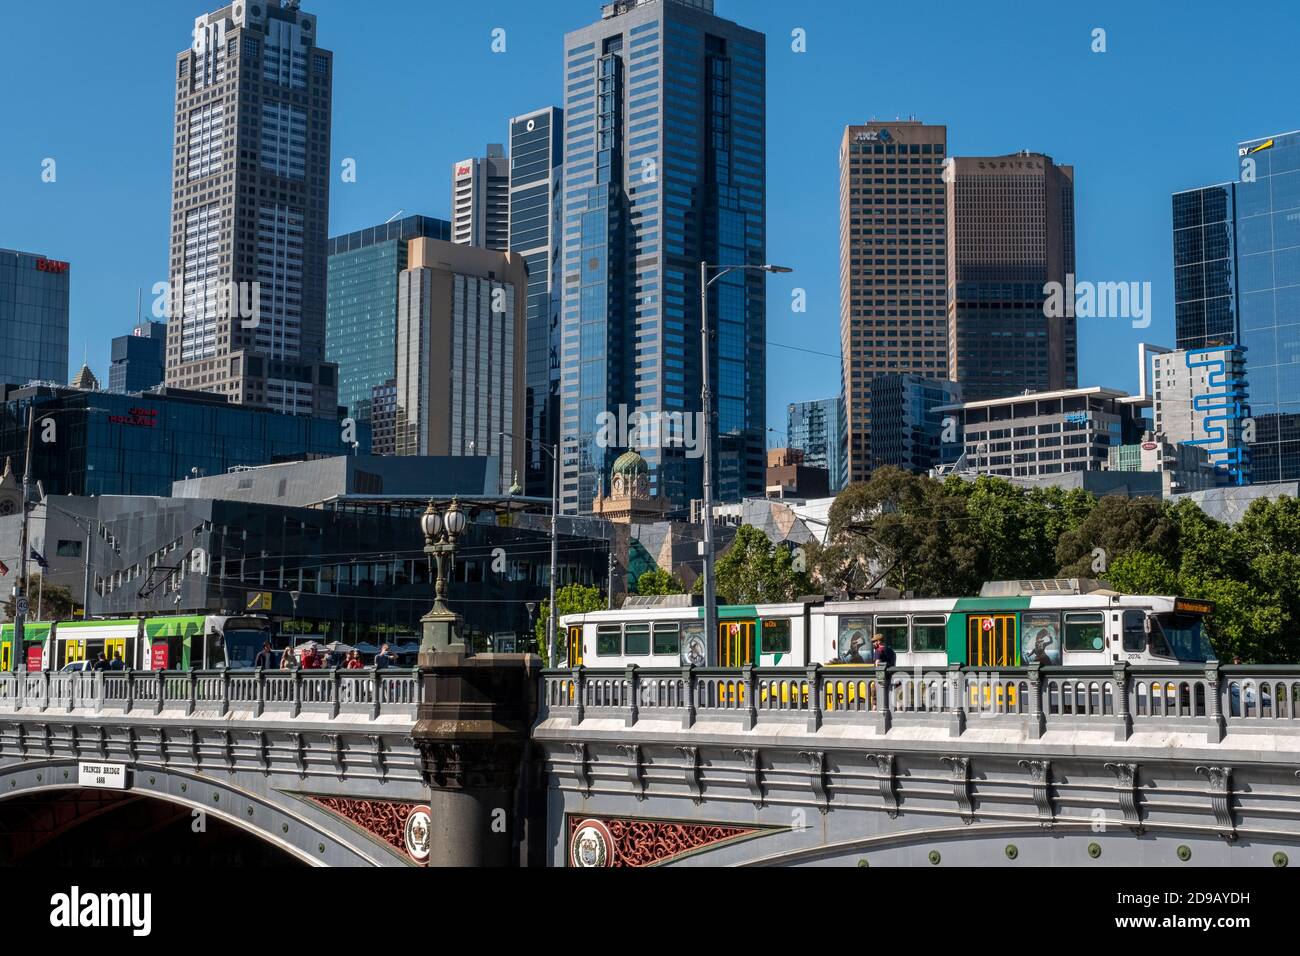 Il y a très peu de personnes qui marchent dans la ville à cause des blocages et du coronavirus. Melbourne Australie Banque D'Images